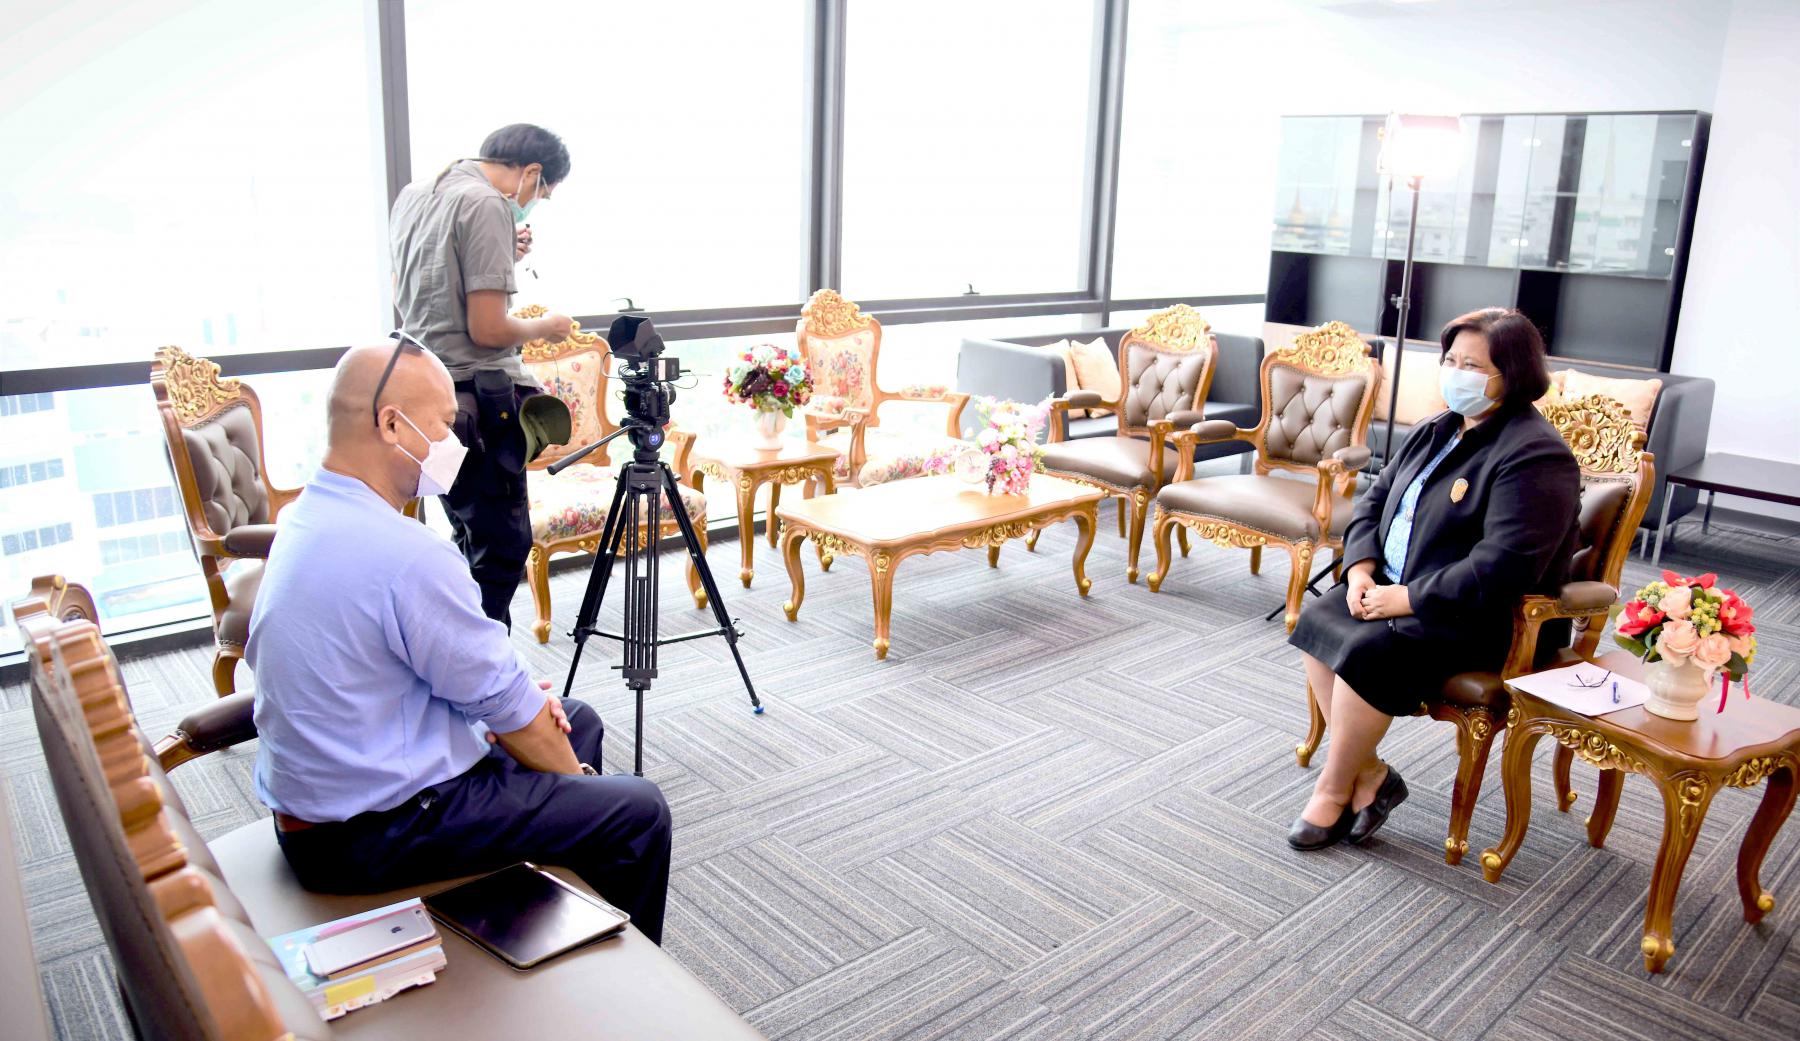 อธิบดีกรมกิจการผู้สูงอายุ ให้สัมภาษณ์ผู้แทนจากสถานีโทรทัศน์ NATION TV ในประเด็นเรื่อง การดูแลผู้สูงอายุในประเทศไทย เพื่อประกอบสารคดีโทรทัศน์ชุด “แผ่นดินชีวิต”